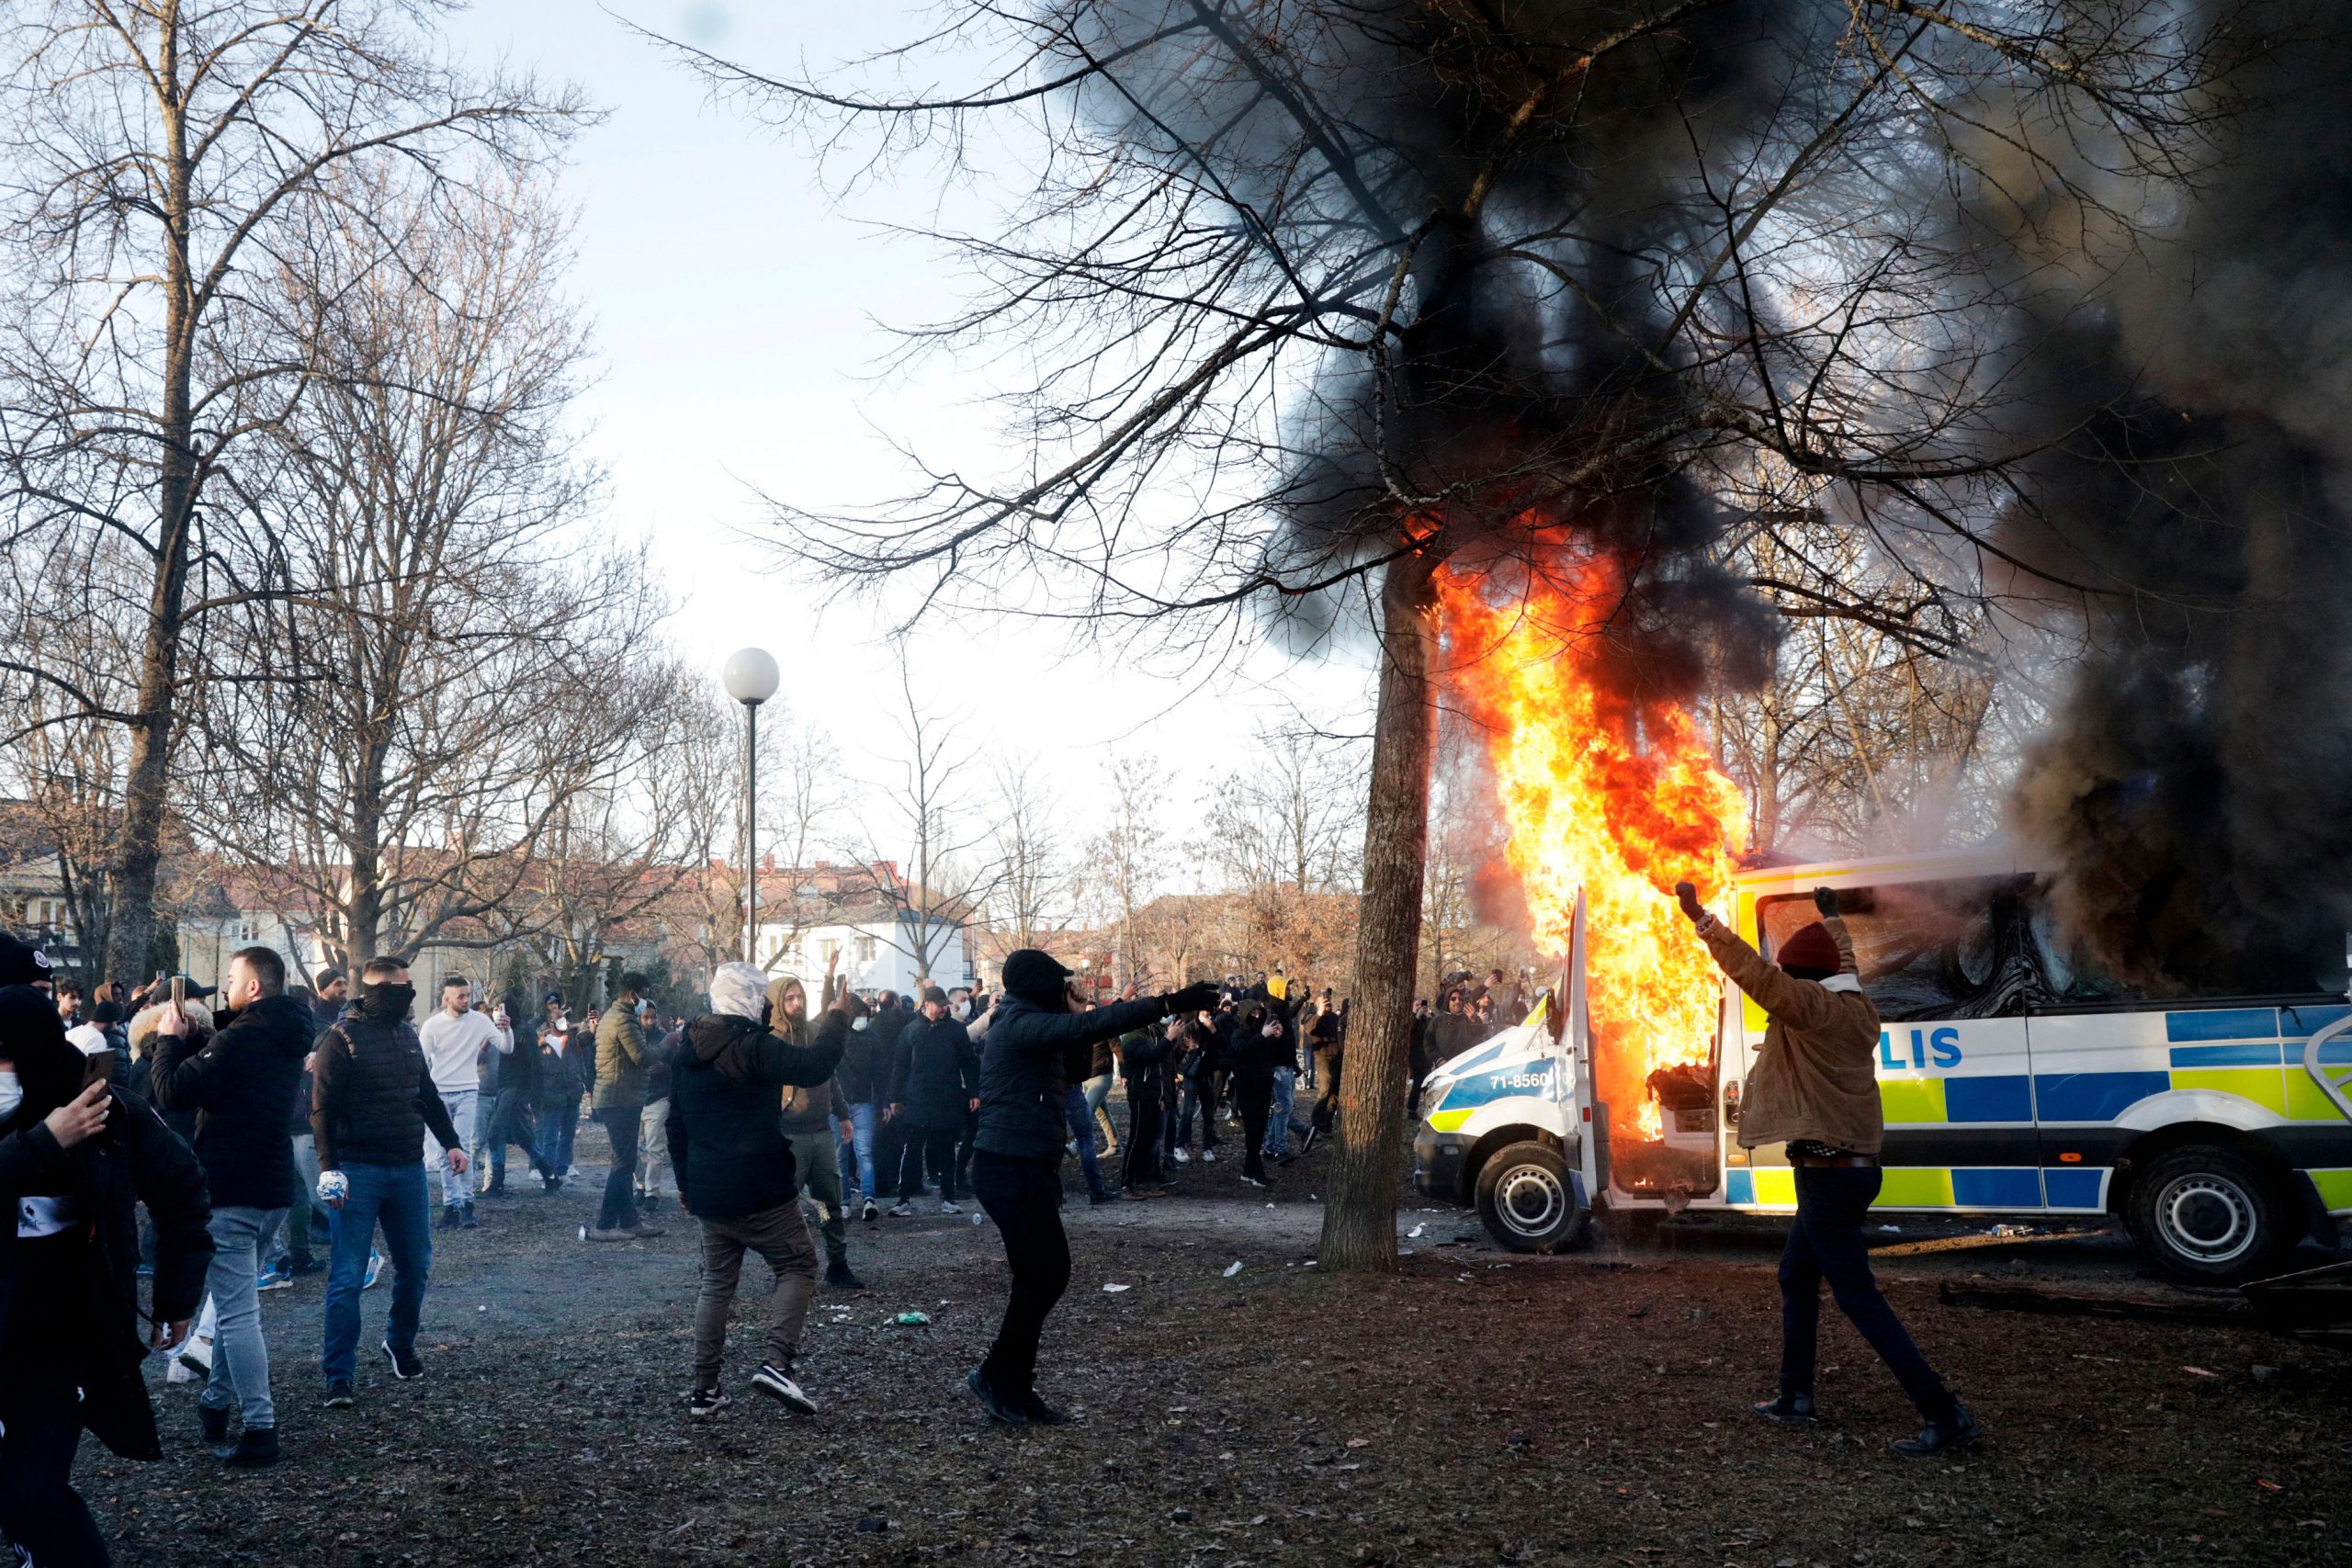 Sweden police open fire, “ricochets” injure 3 anti-far-right protestors